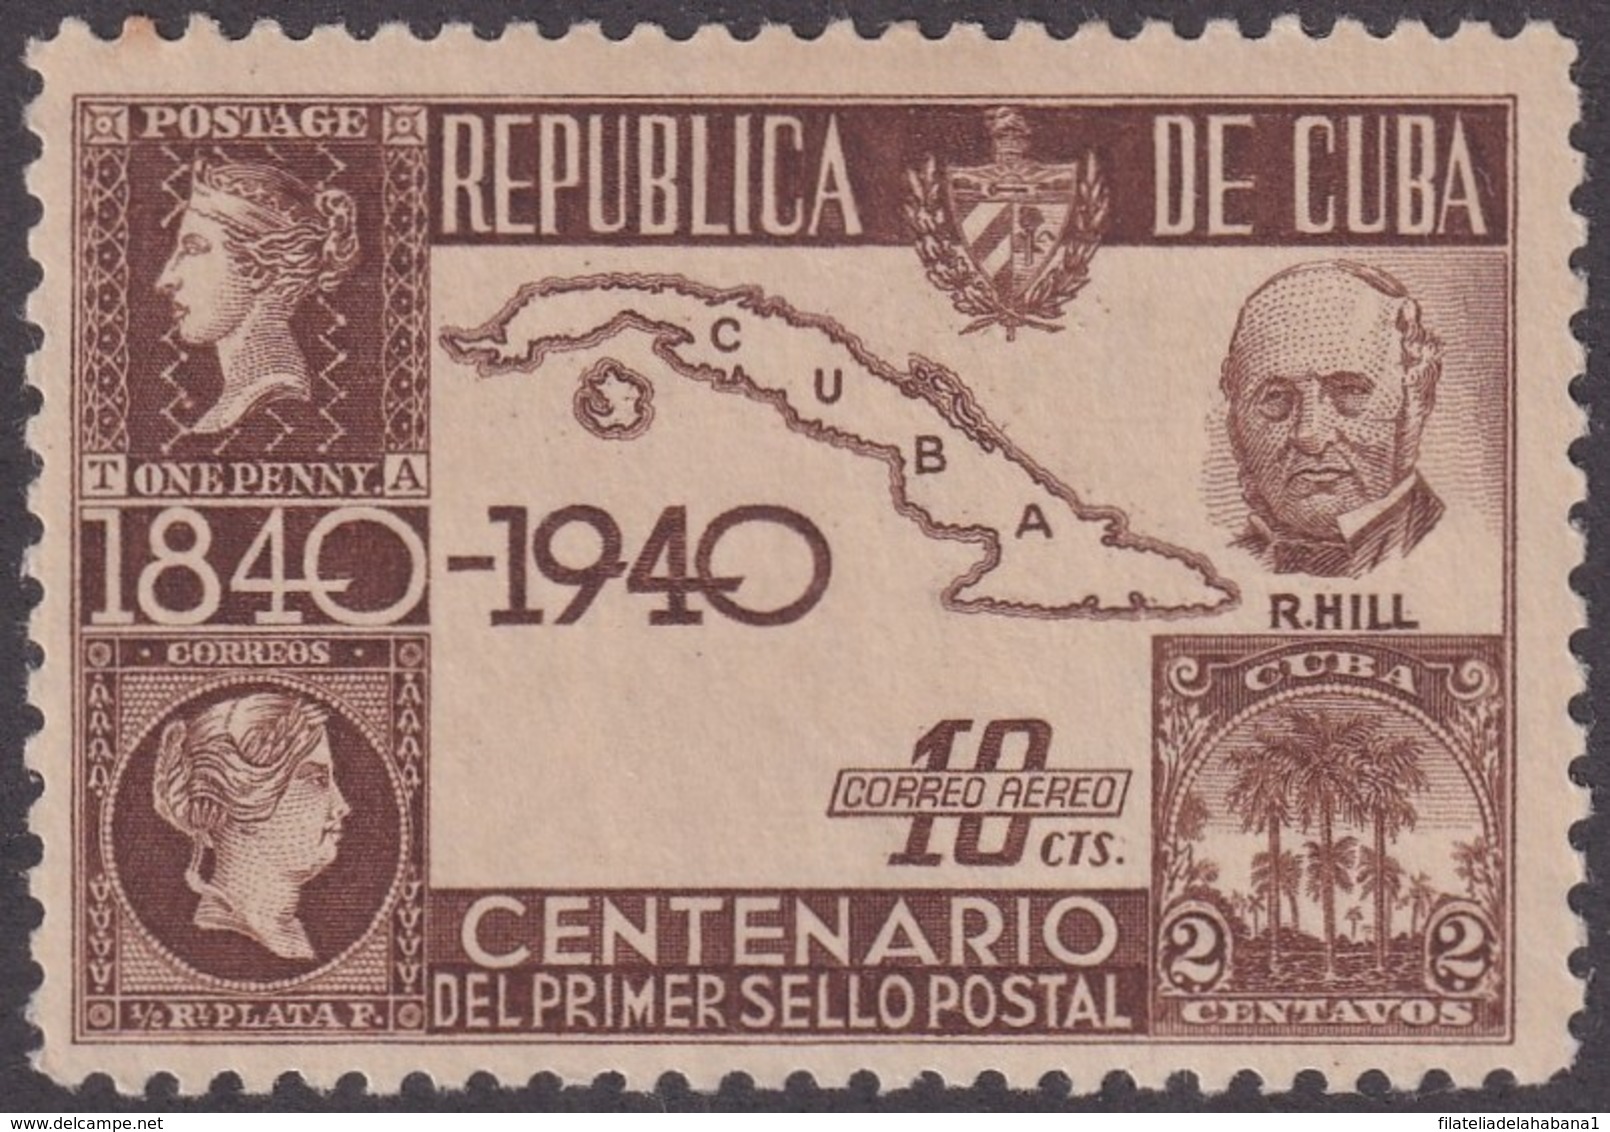 1940-283 CUBA REPUBLICA 1940 Ed.342. CENTENARIO DEL PENNY BLACK, ROWLAND HILL. MH. - Prephilately